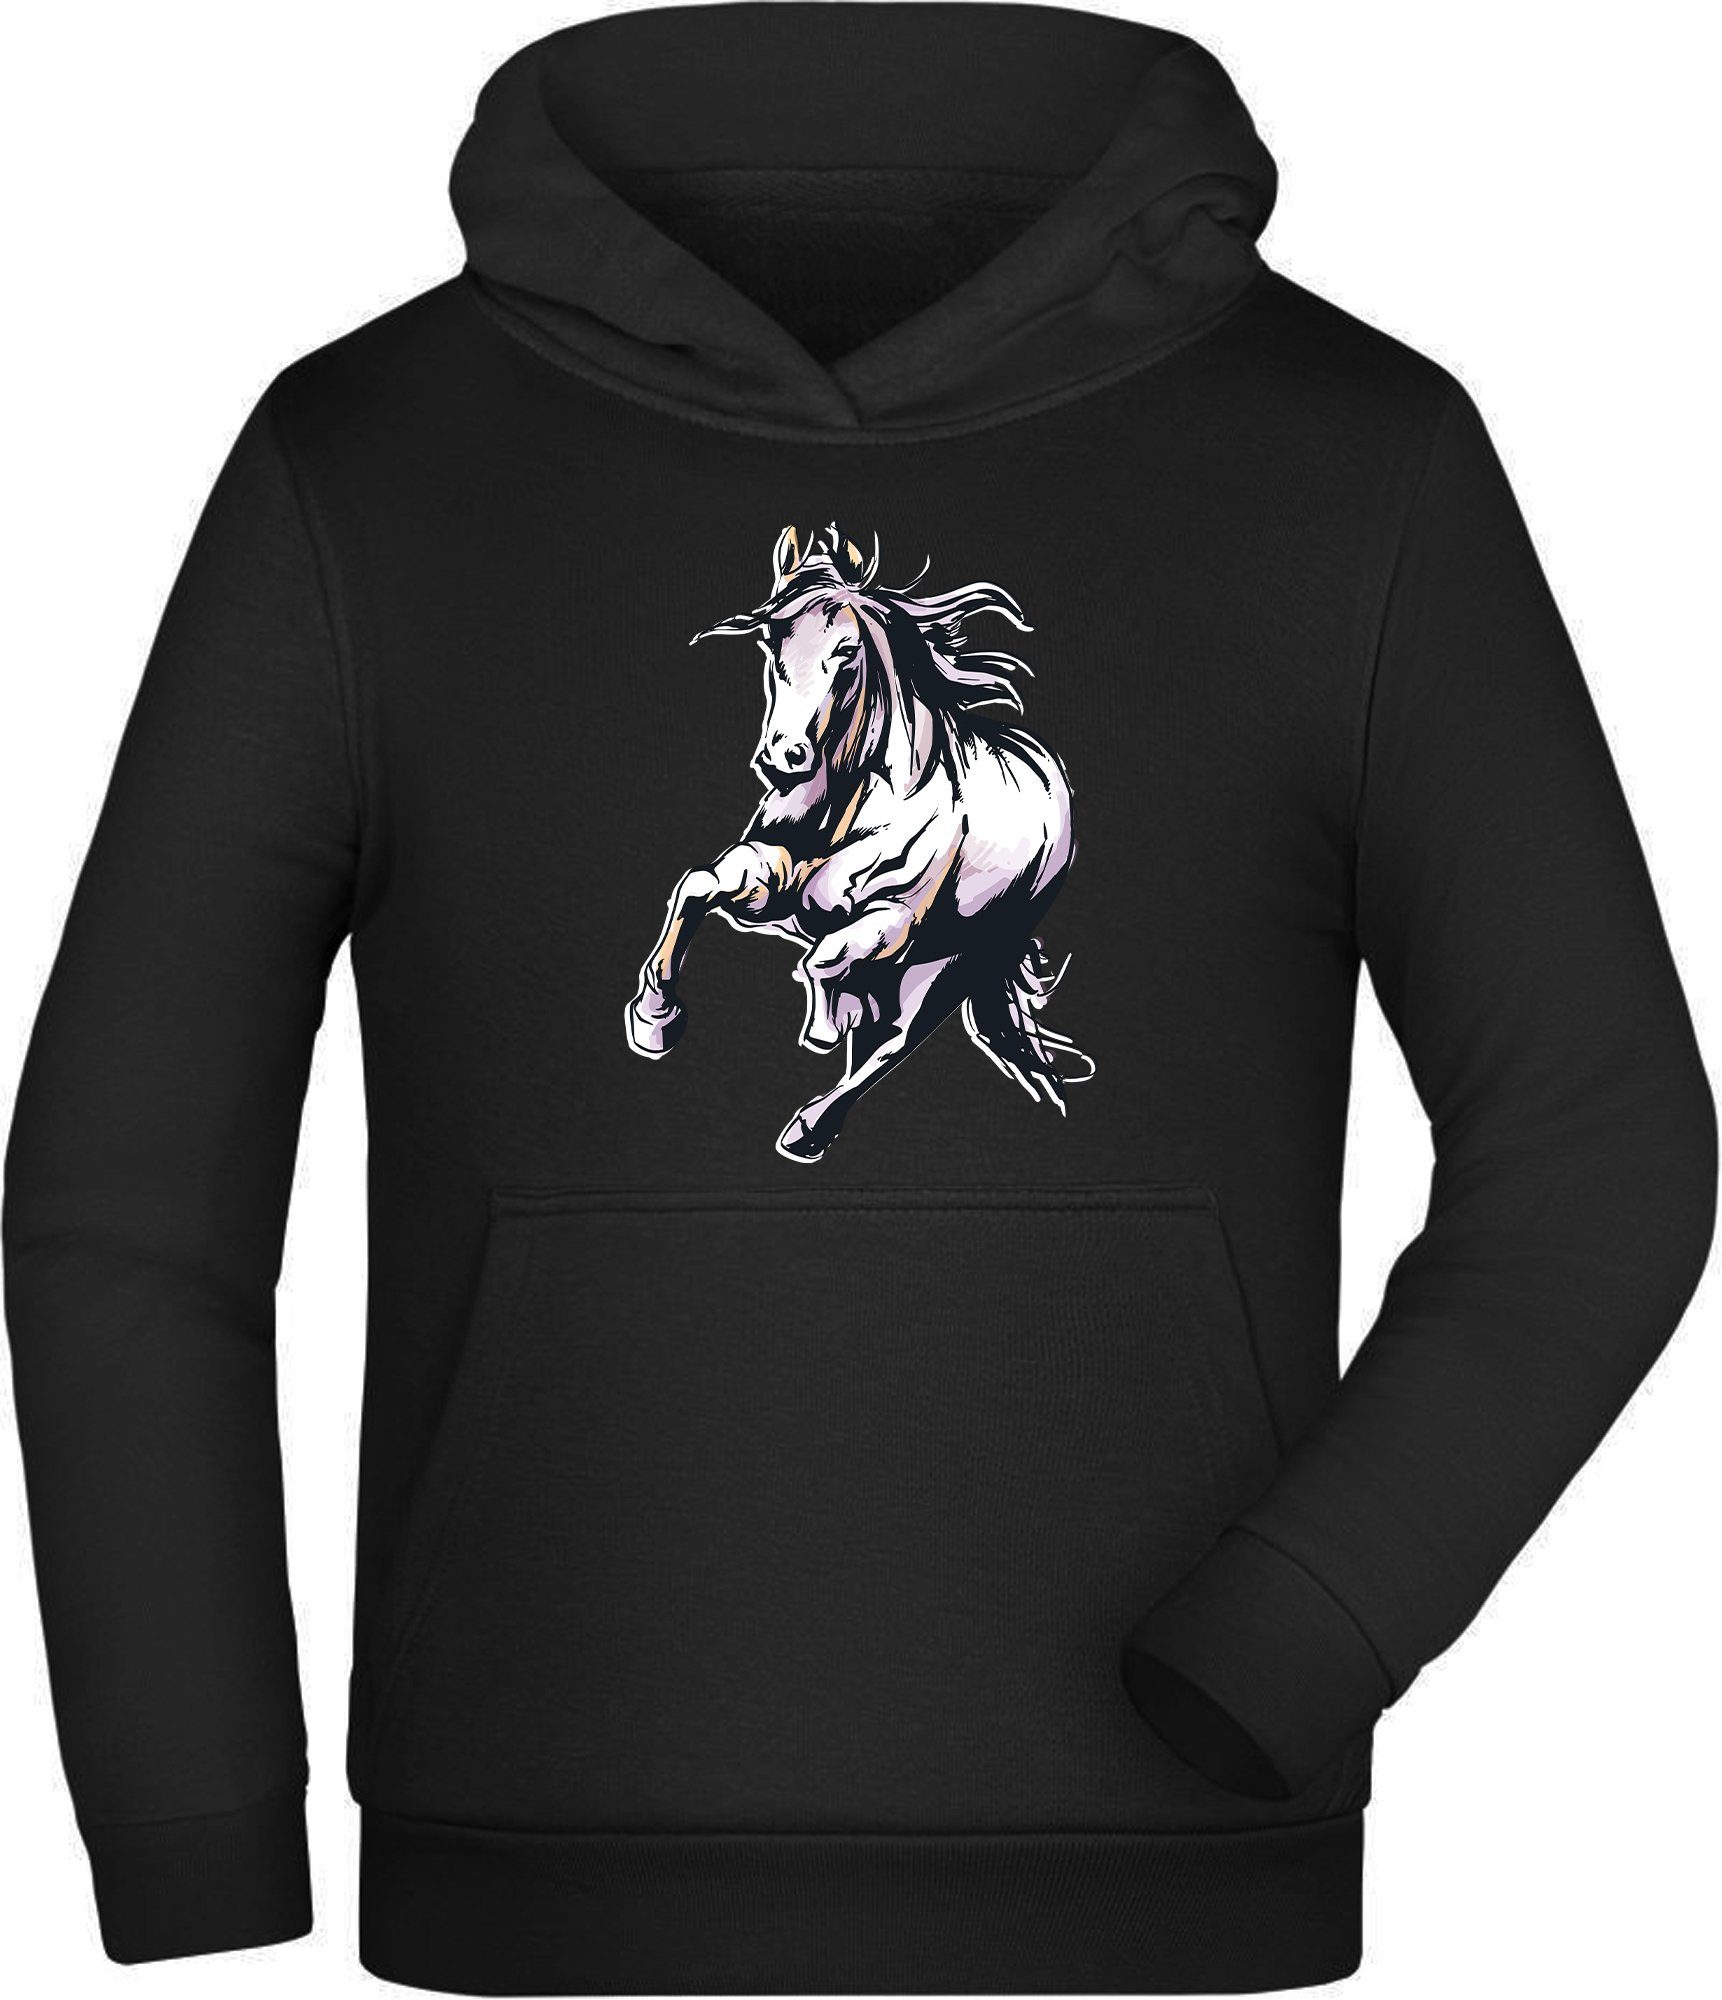 MyDesign24 Hoodie Kinder Kapuzen Sweatshirt i168 Kapuzensweater Hoodie Pferd Rennendes mit Pferde Aufdruck